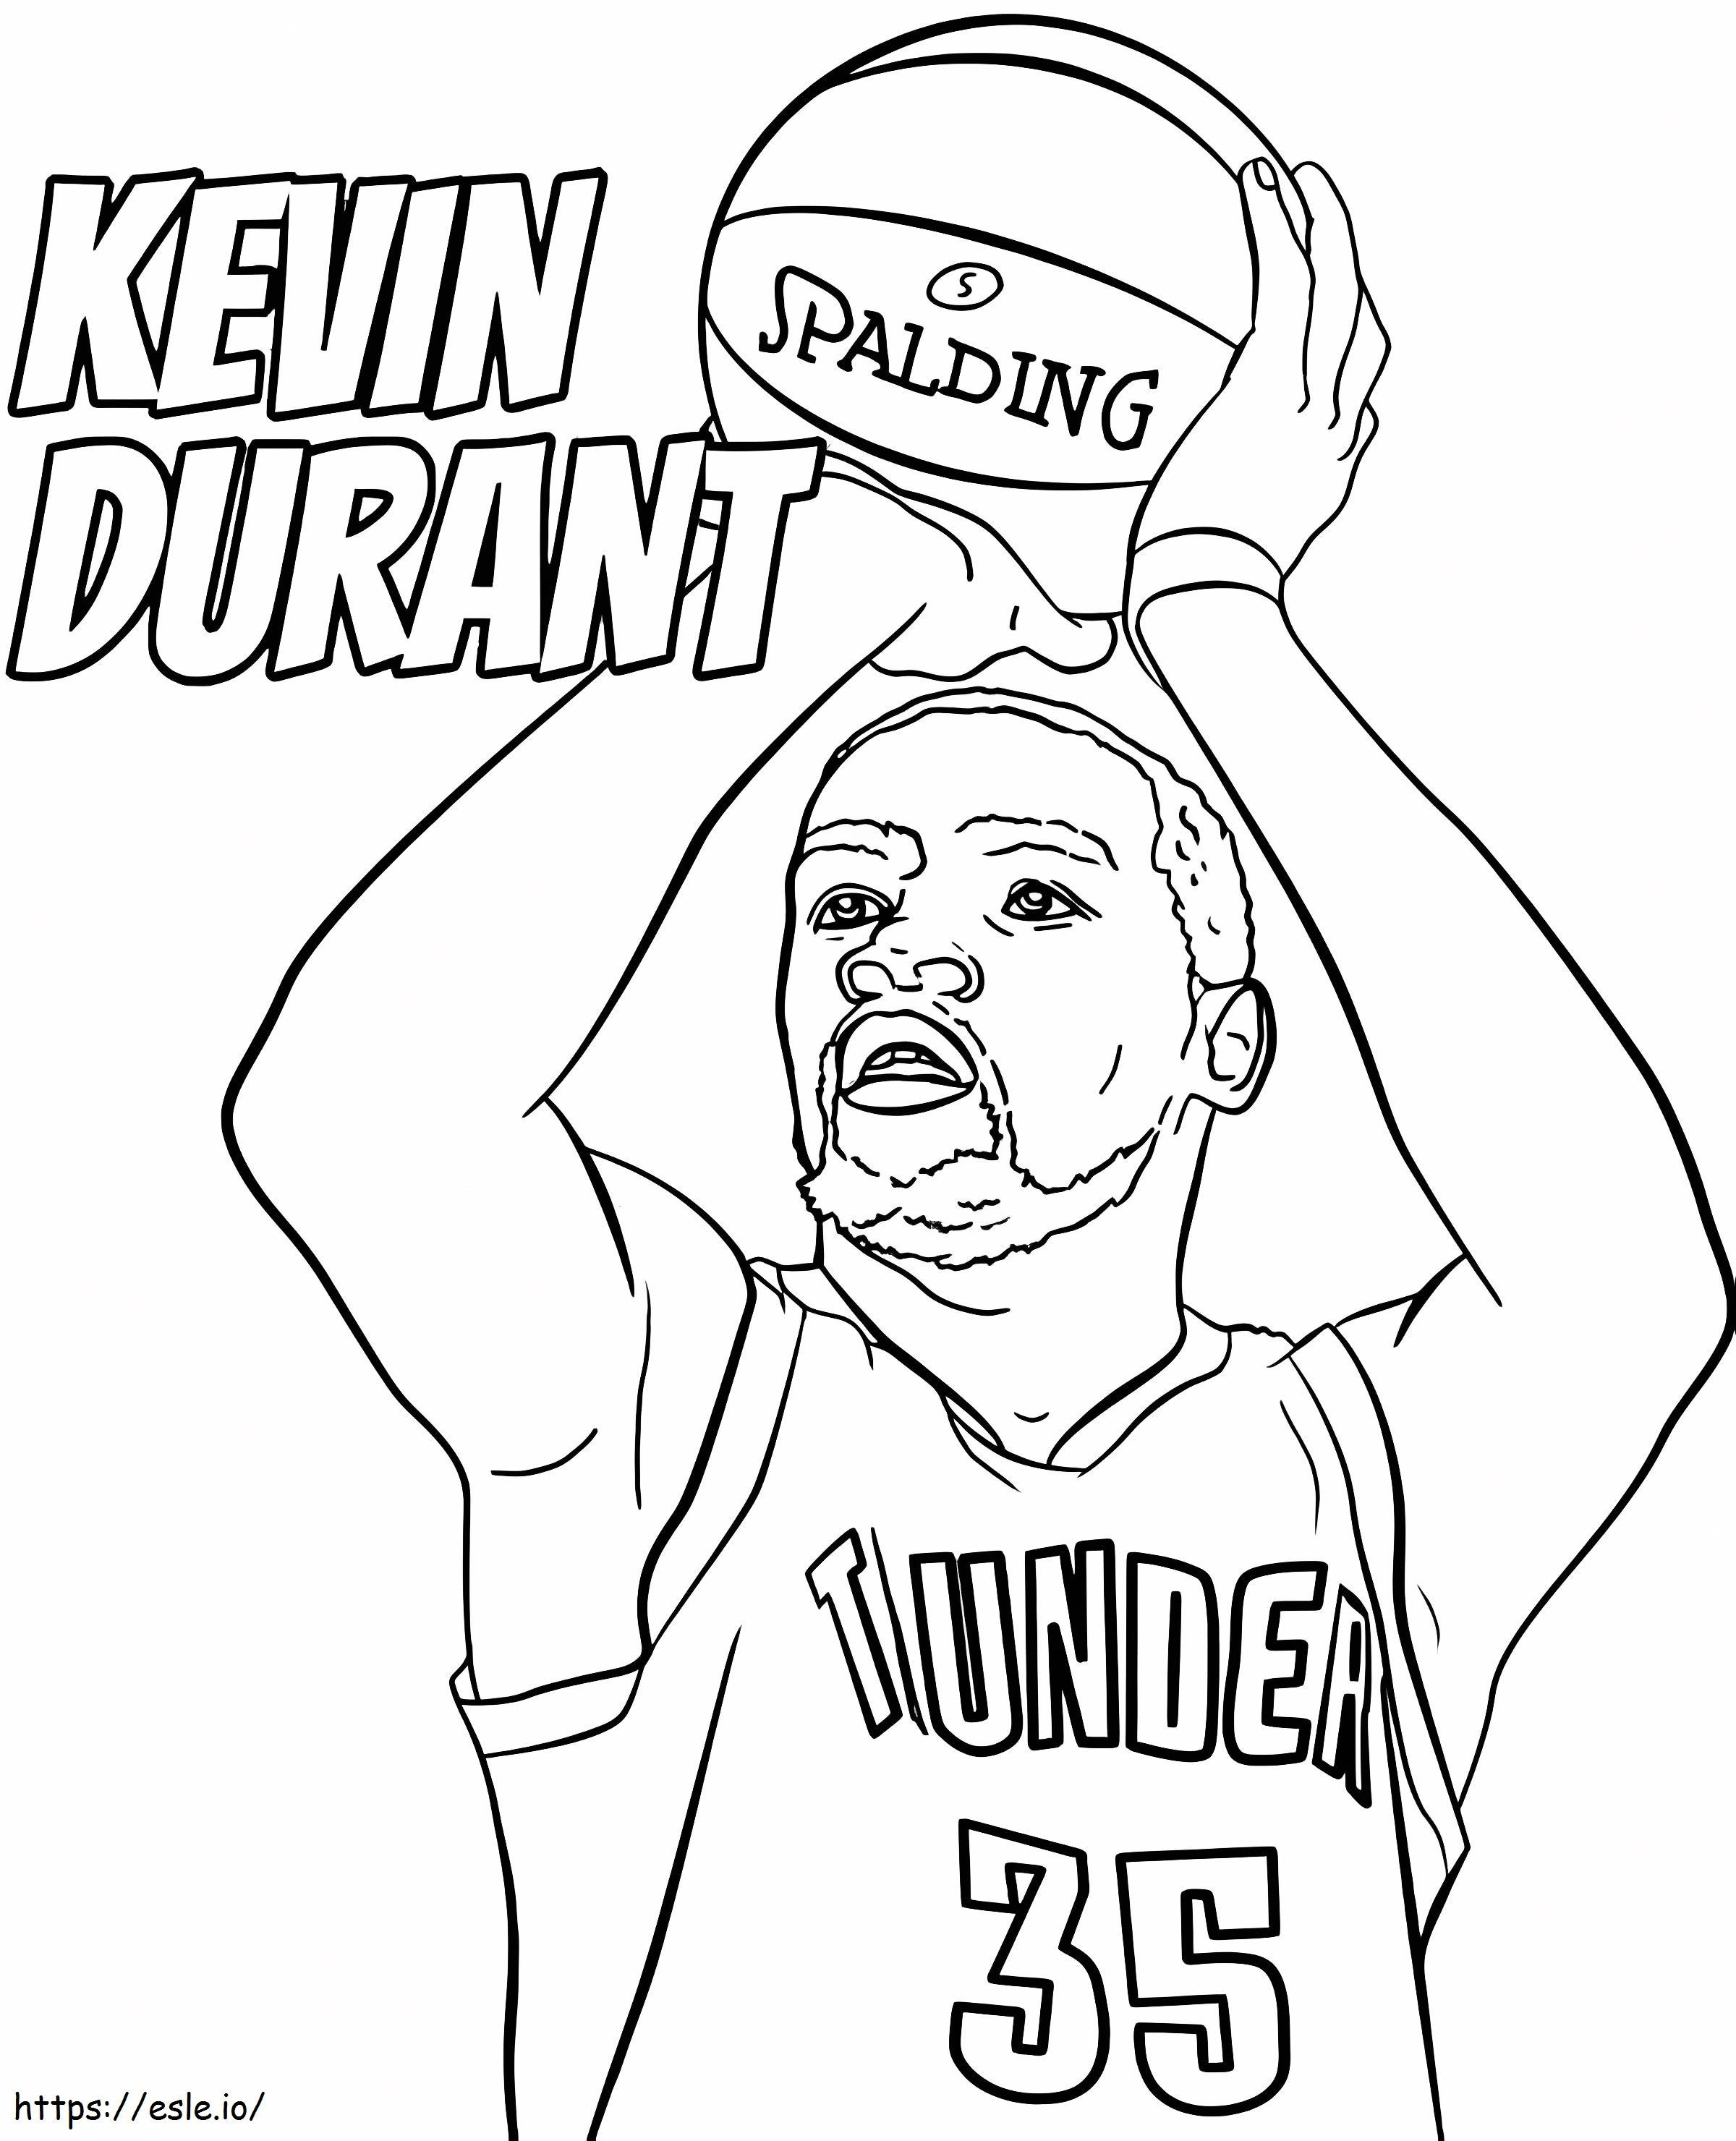 Tulostettava Kevin Durant värityskuva